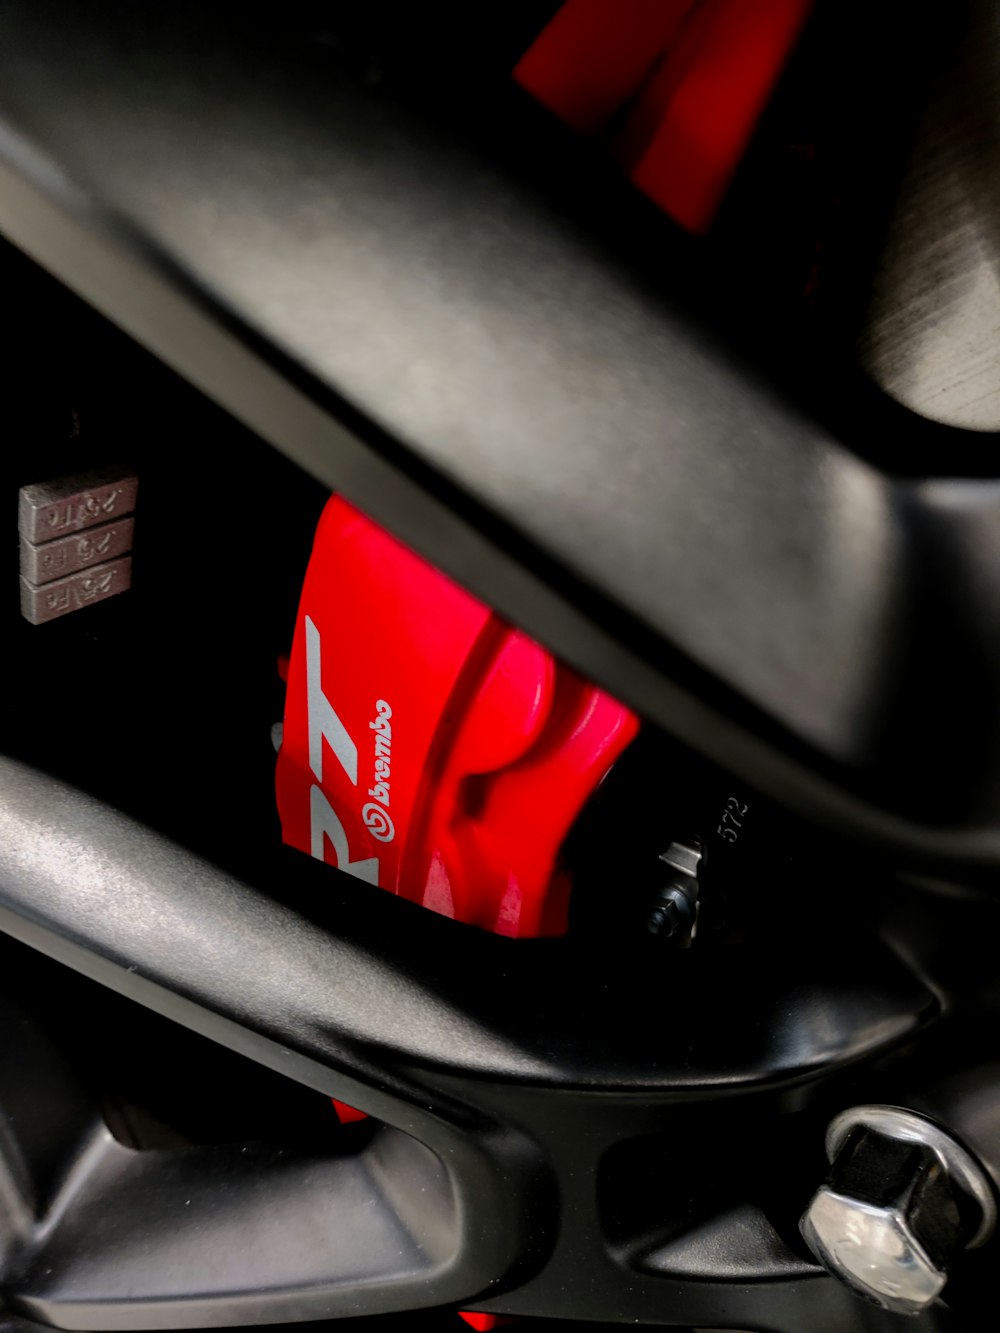 black and red honda car steering wheel